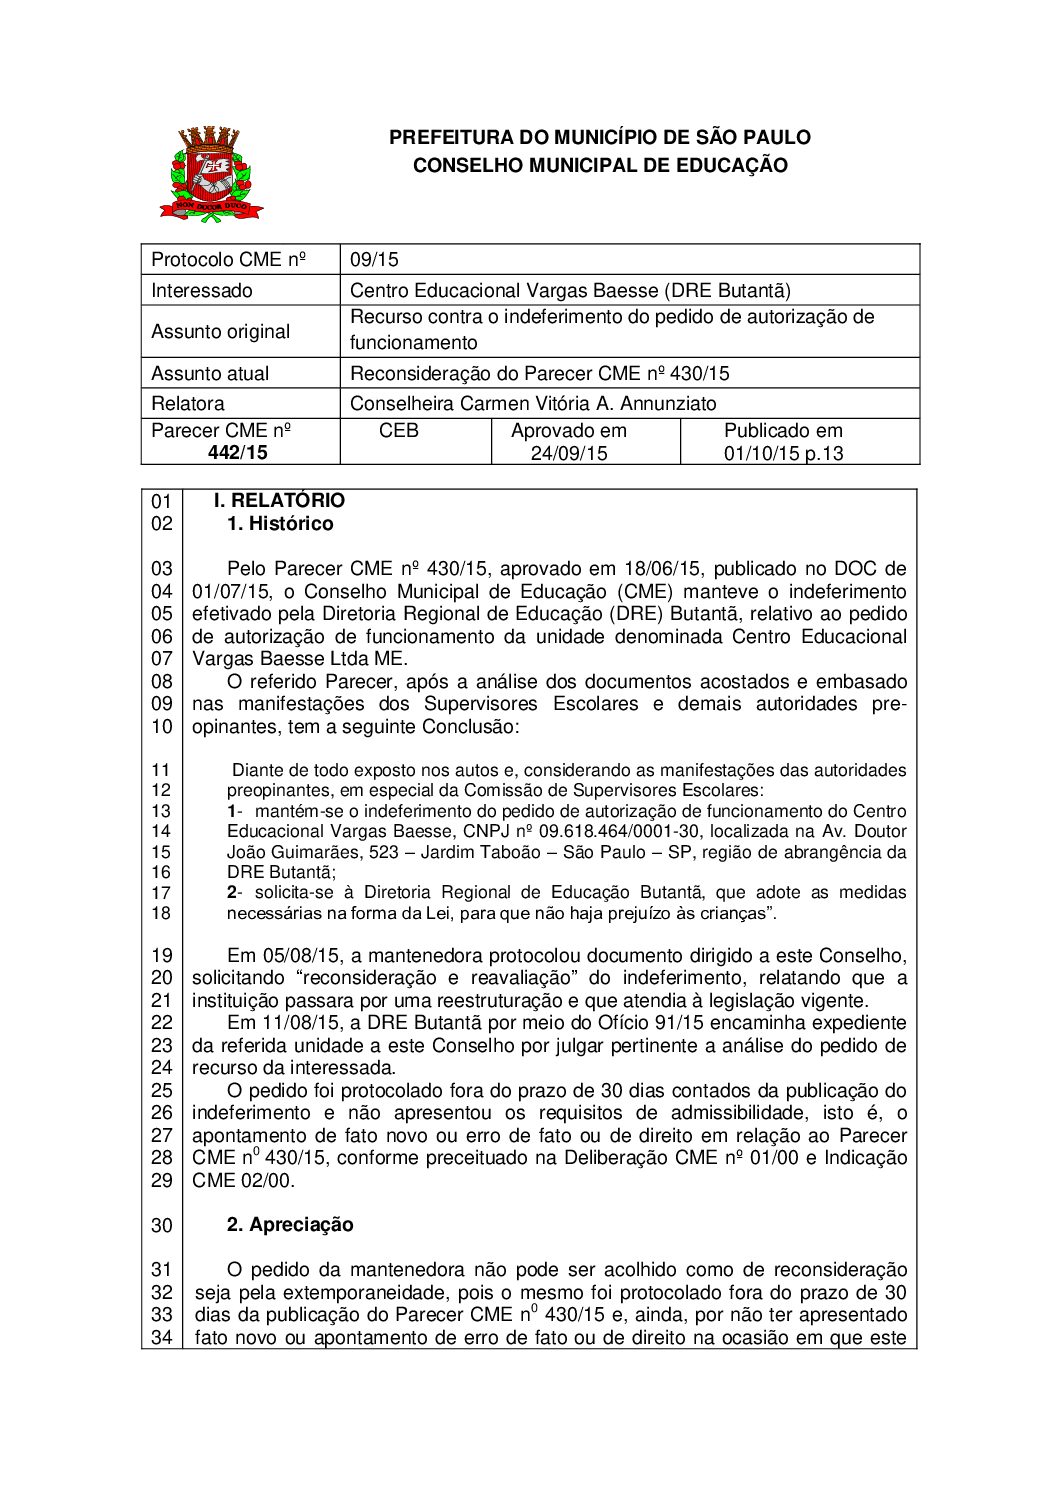 Parecer CME nº 442/2015 - Centro Educacional Vargas Baesse (DRE Butantã) - Reconsideração do Parecer CME nº 430/2015 